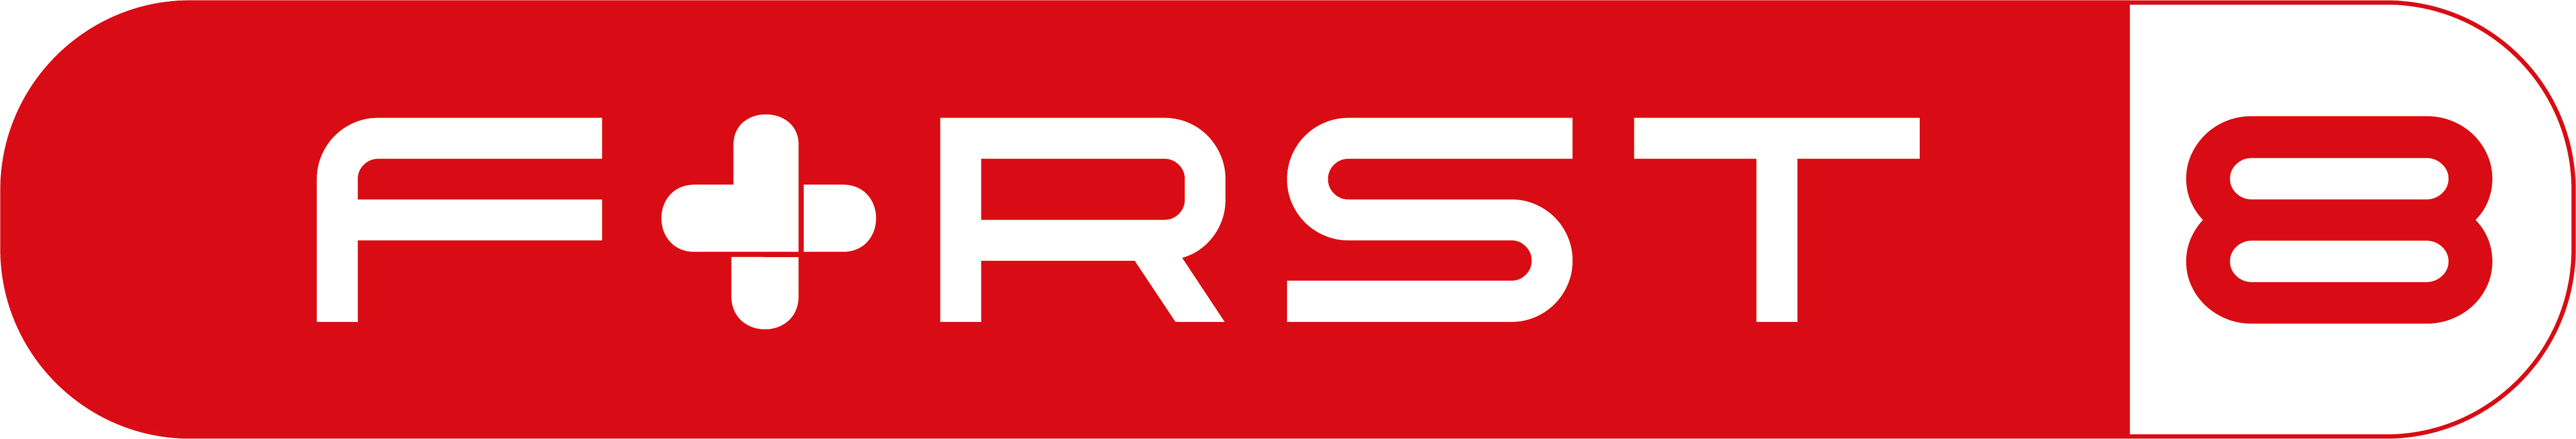 First-8 logo